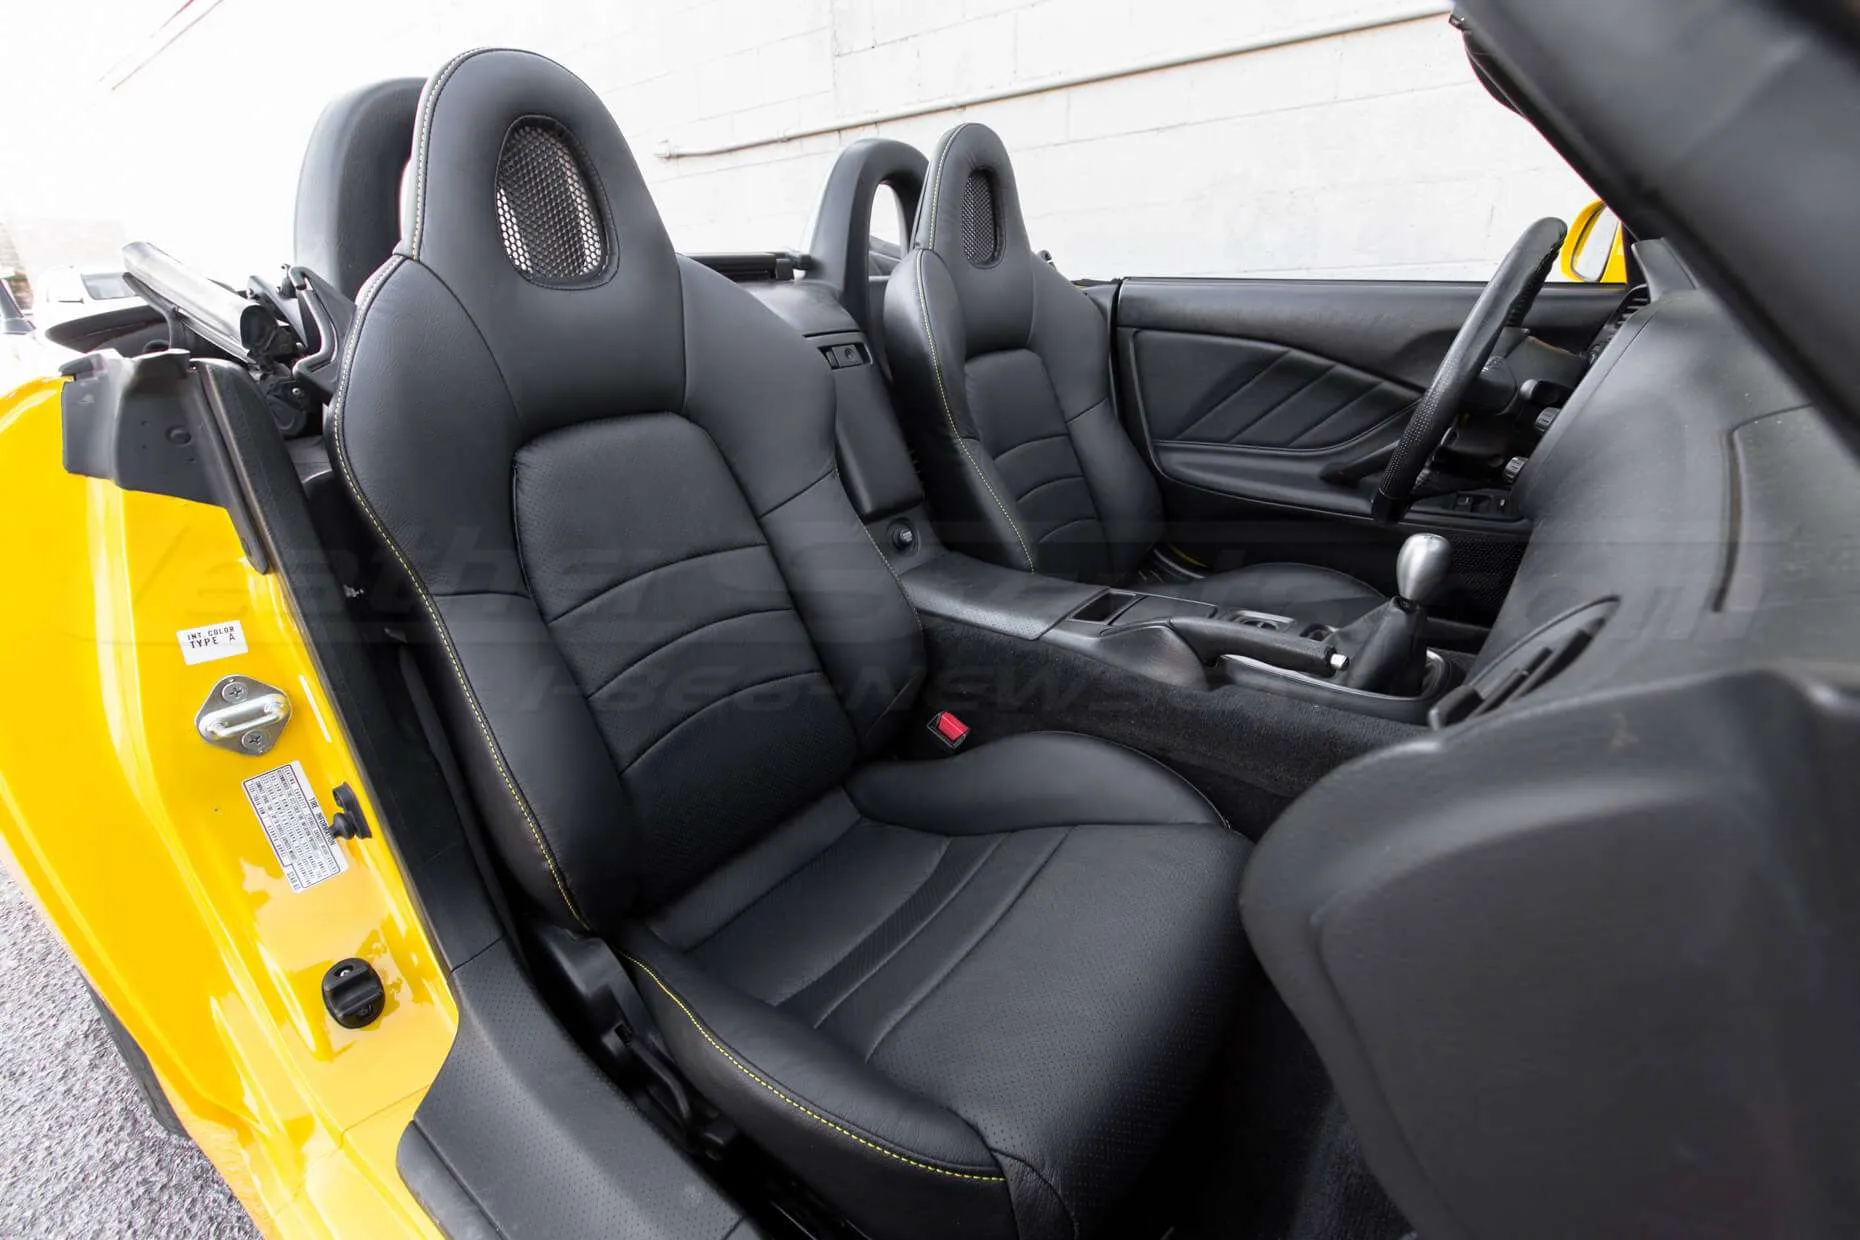 Honda S2000 Leather Upholster - Black - Full interior from passenger side